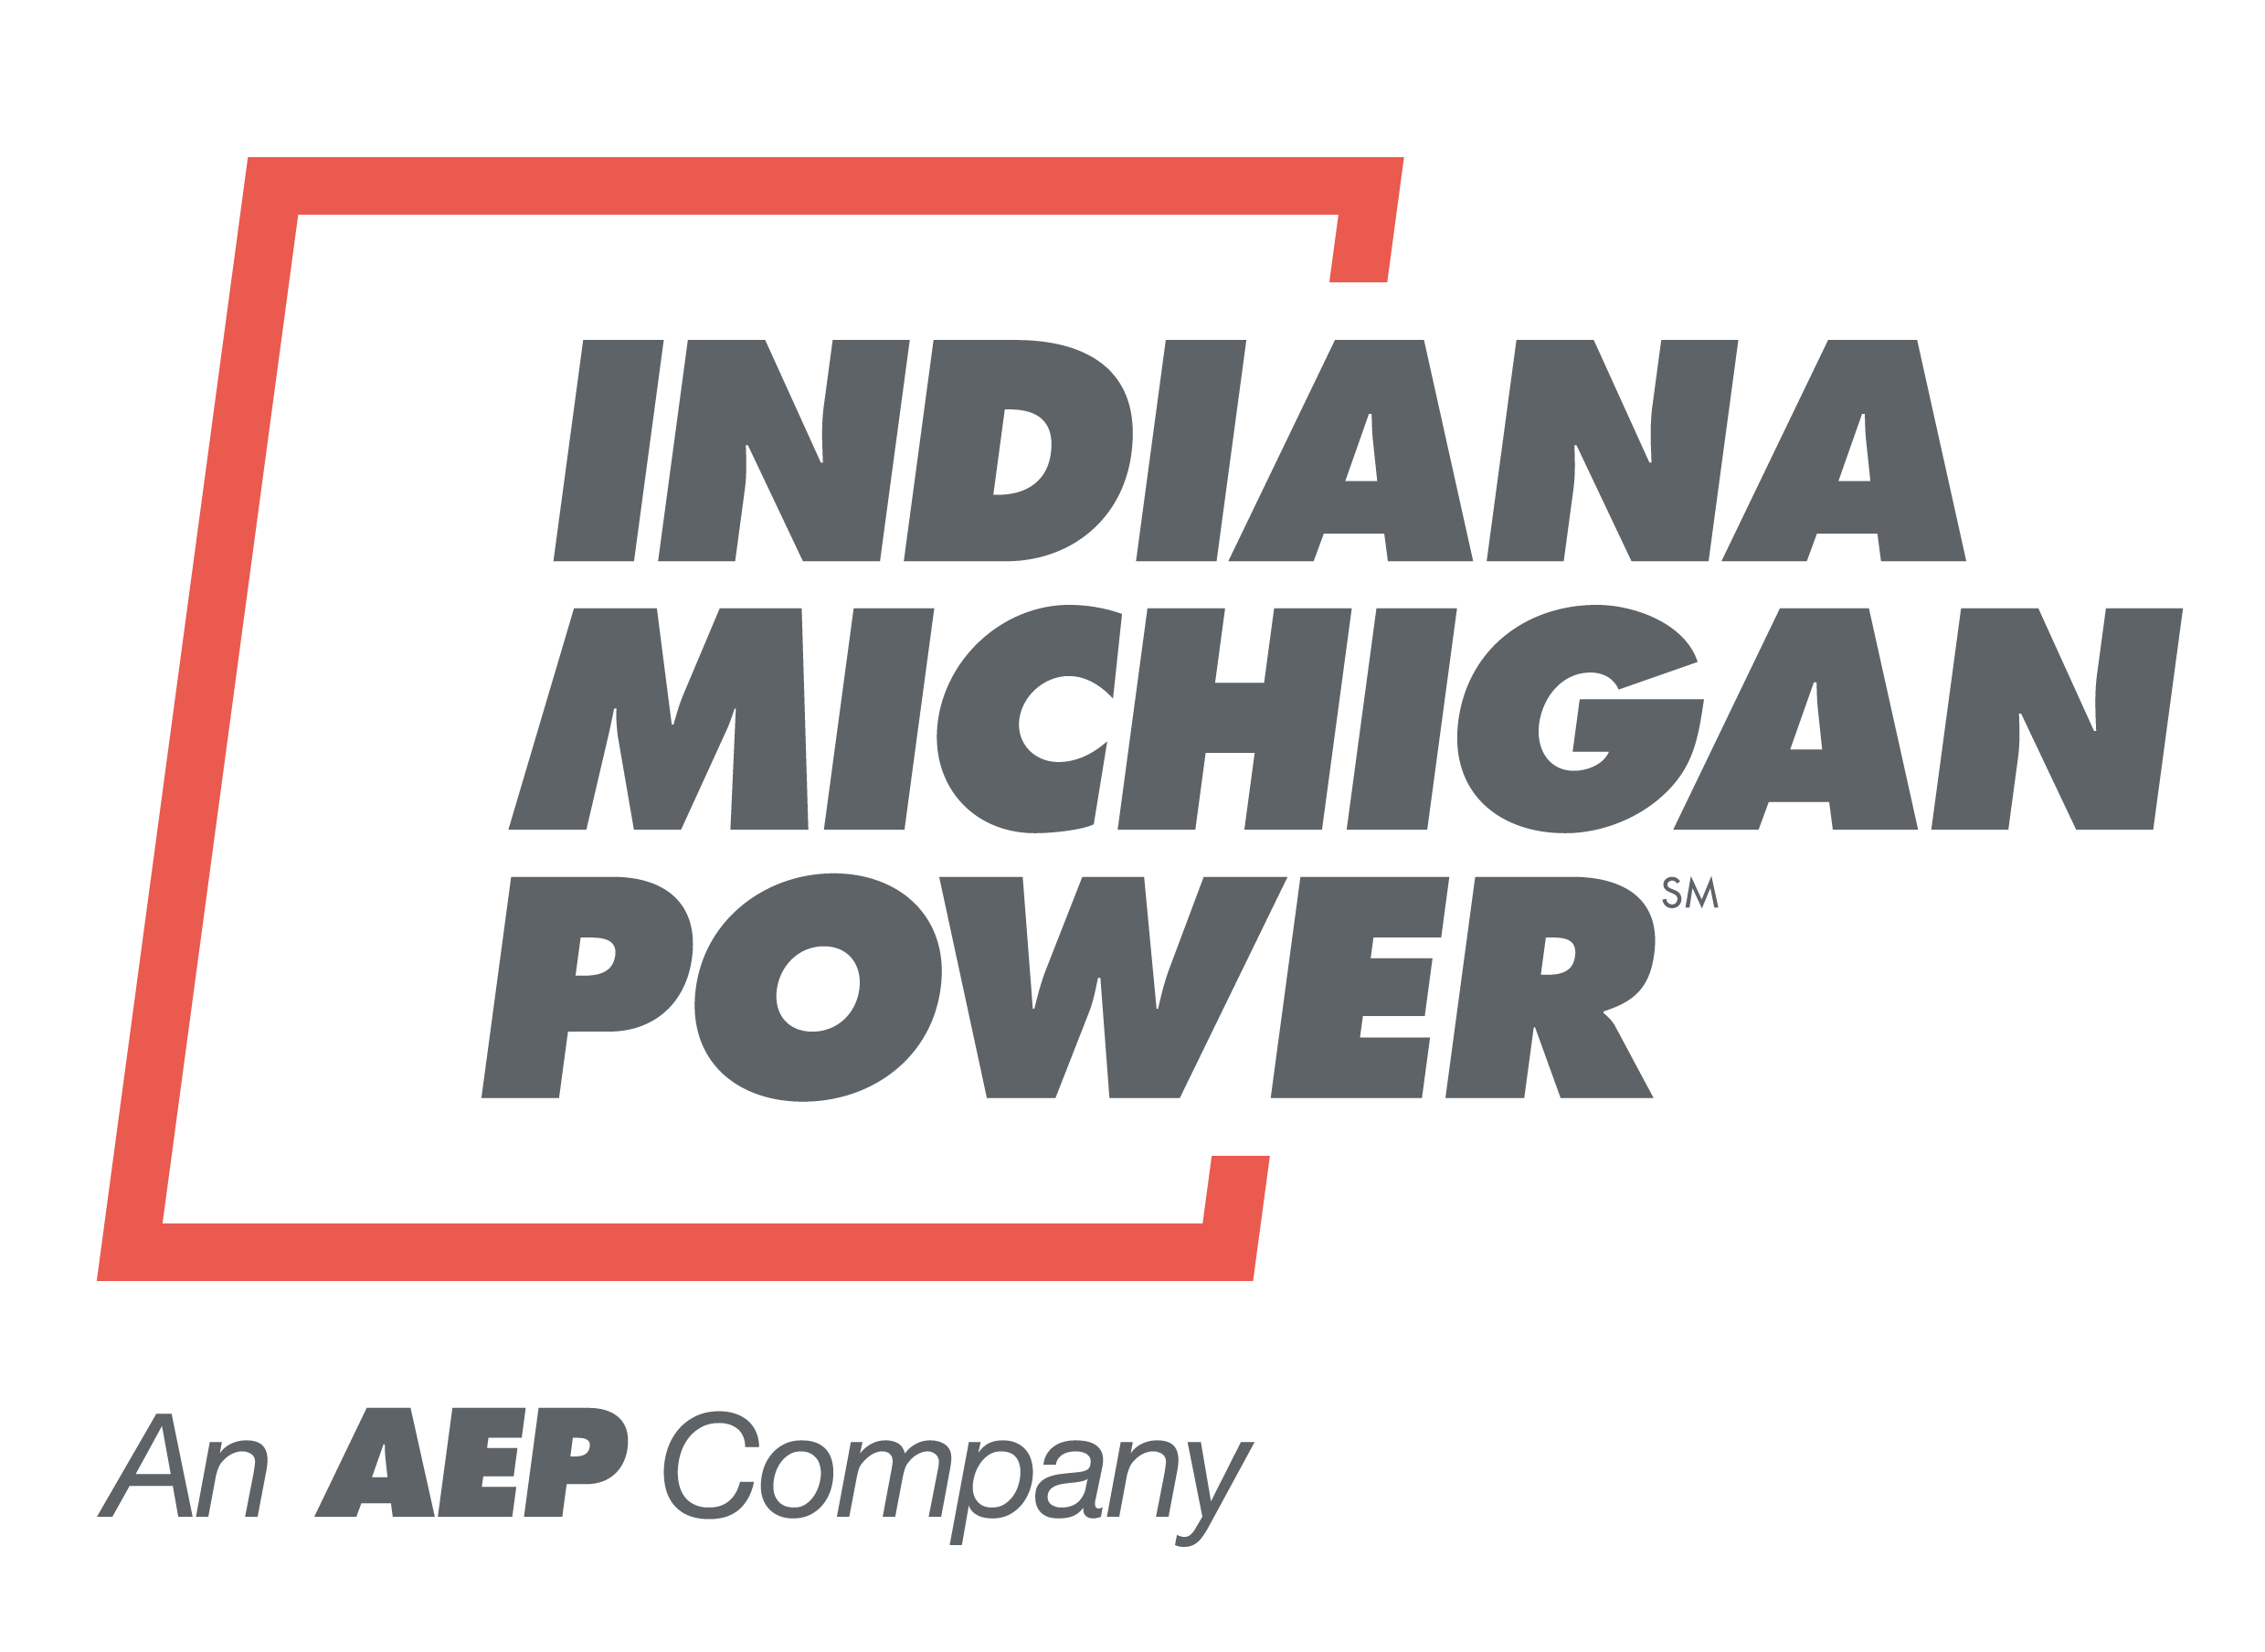 AEP Indiana Michigan Power